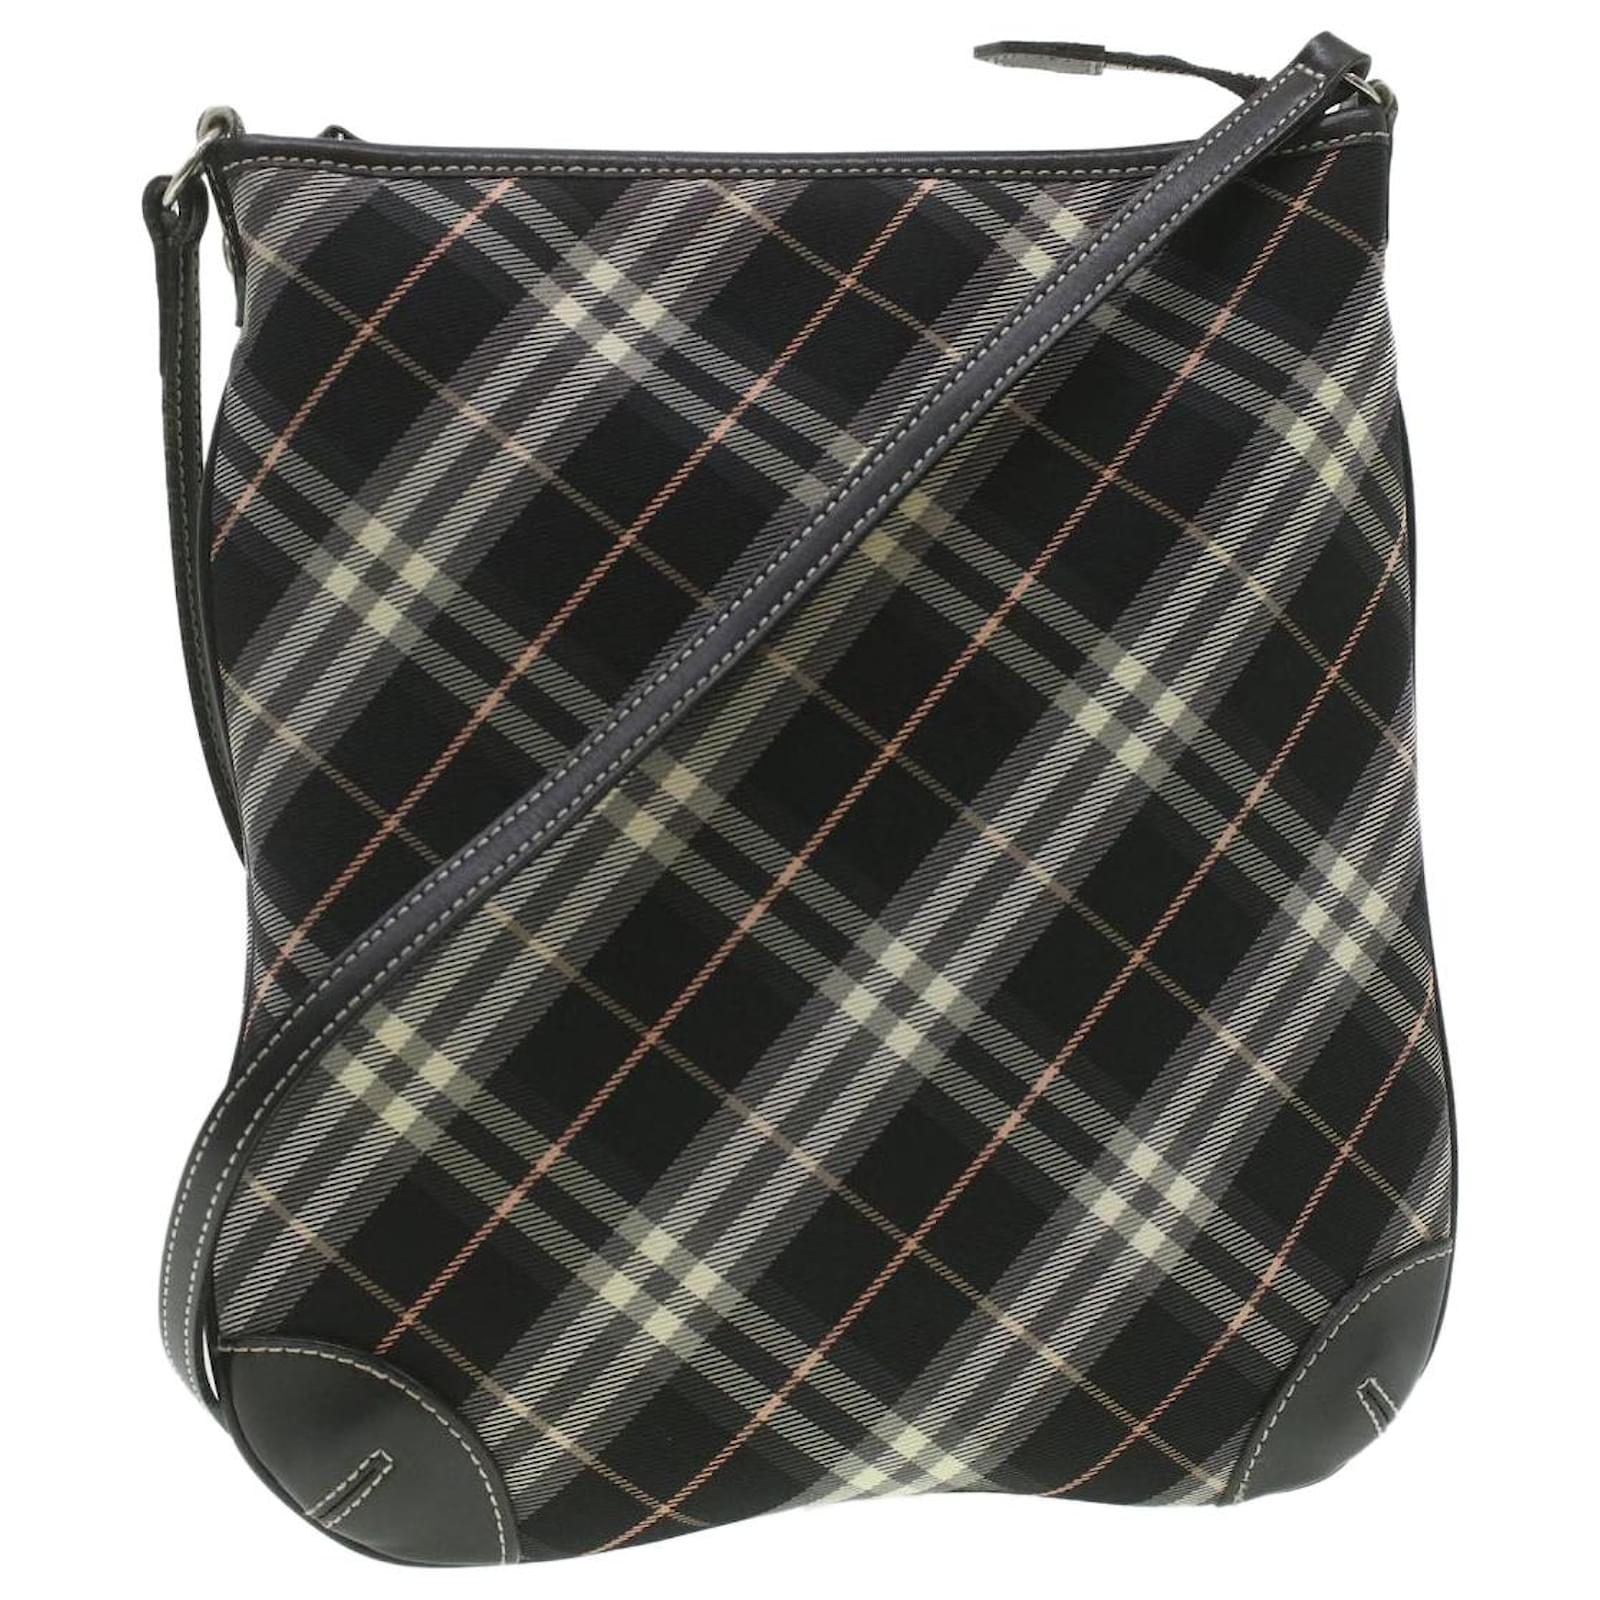 Authentic Burberry Nova Check Shoulder Bag